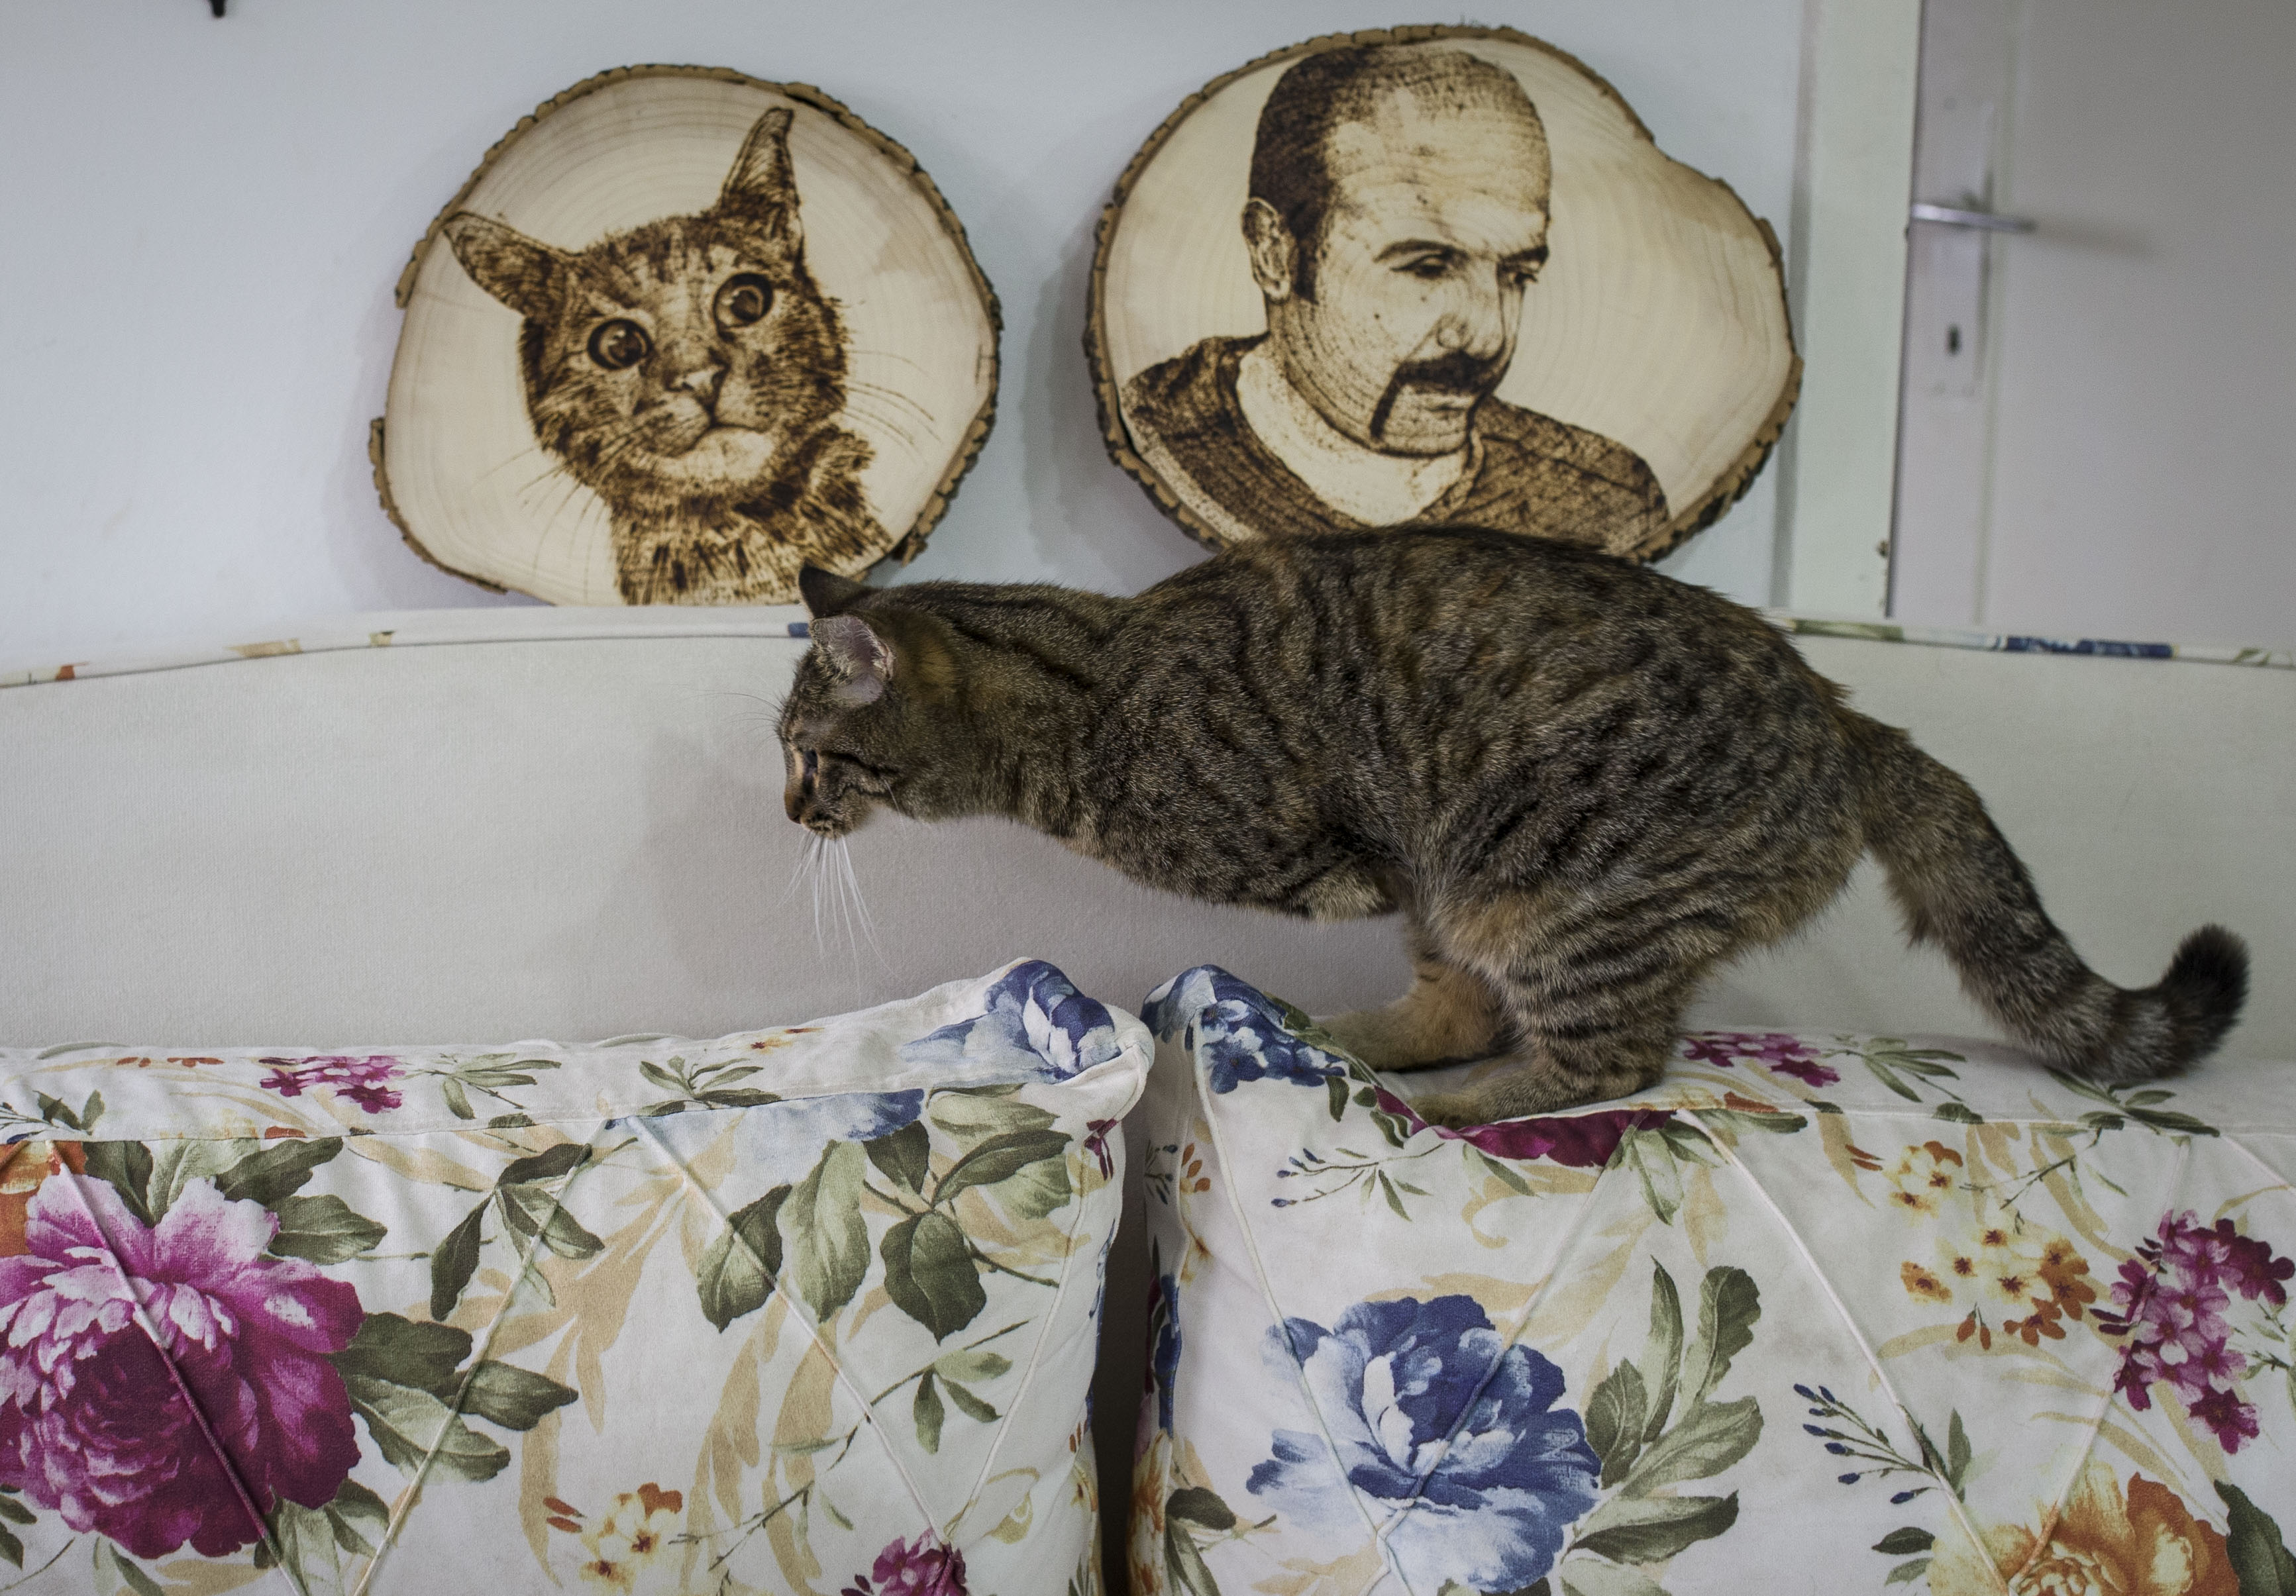 تبنى التركي "عثمان قبلان" تربية قطة صغيرة مبتورة الساقين، وجدها في إحدى الطرقات، حيث أصبحت مصدر سعادة له. وقال قبلان للأناضول، "وجدت القطة في حالة يرثى لها، حيث إحدى ساقيها الأماميتين مبتورة، ونقلتها إلى إحدى البيطريات، وأجريت لها عملية لساقها الأمامي الآخر الذي كان يعاني من خمسة ( Binnur Ege Gürün - وكالة الأناضول )